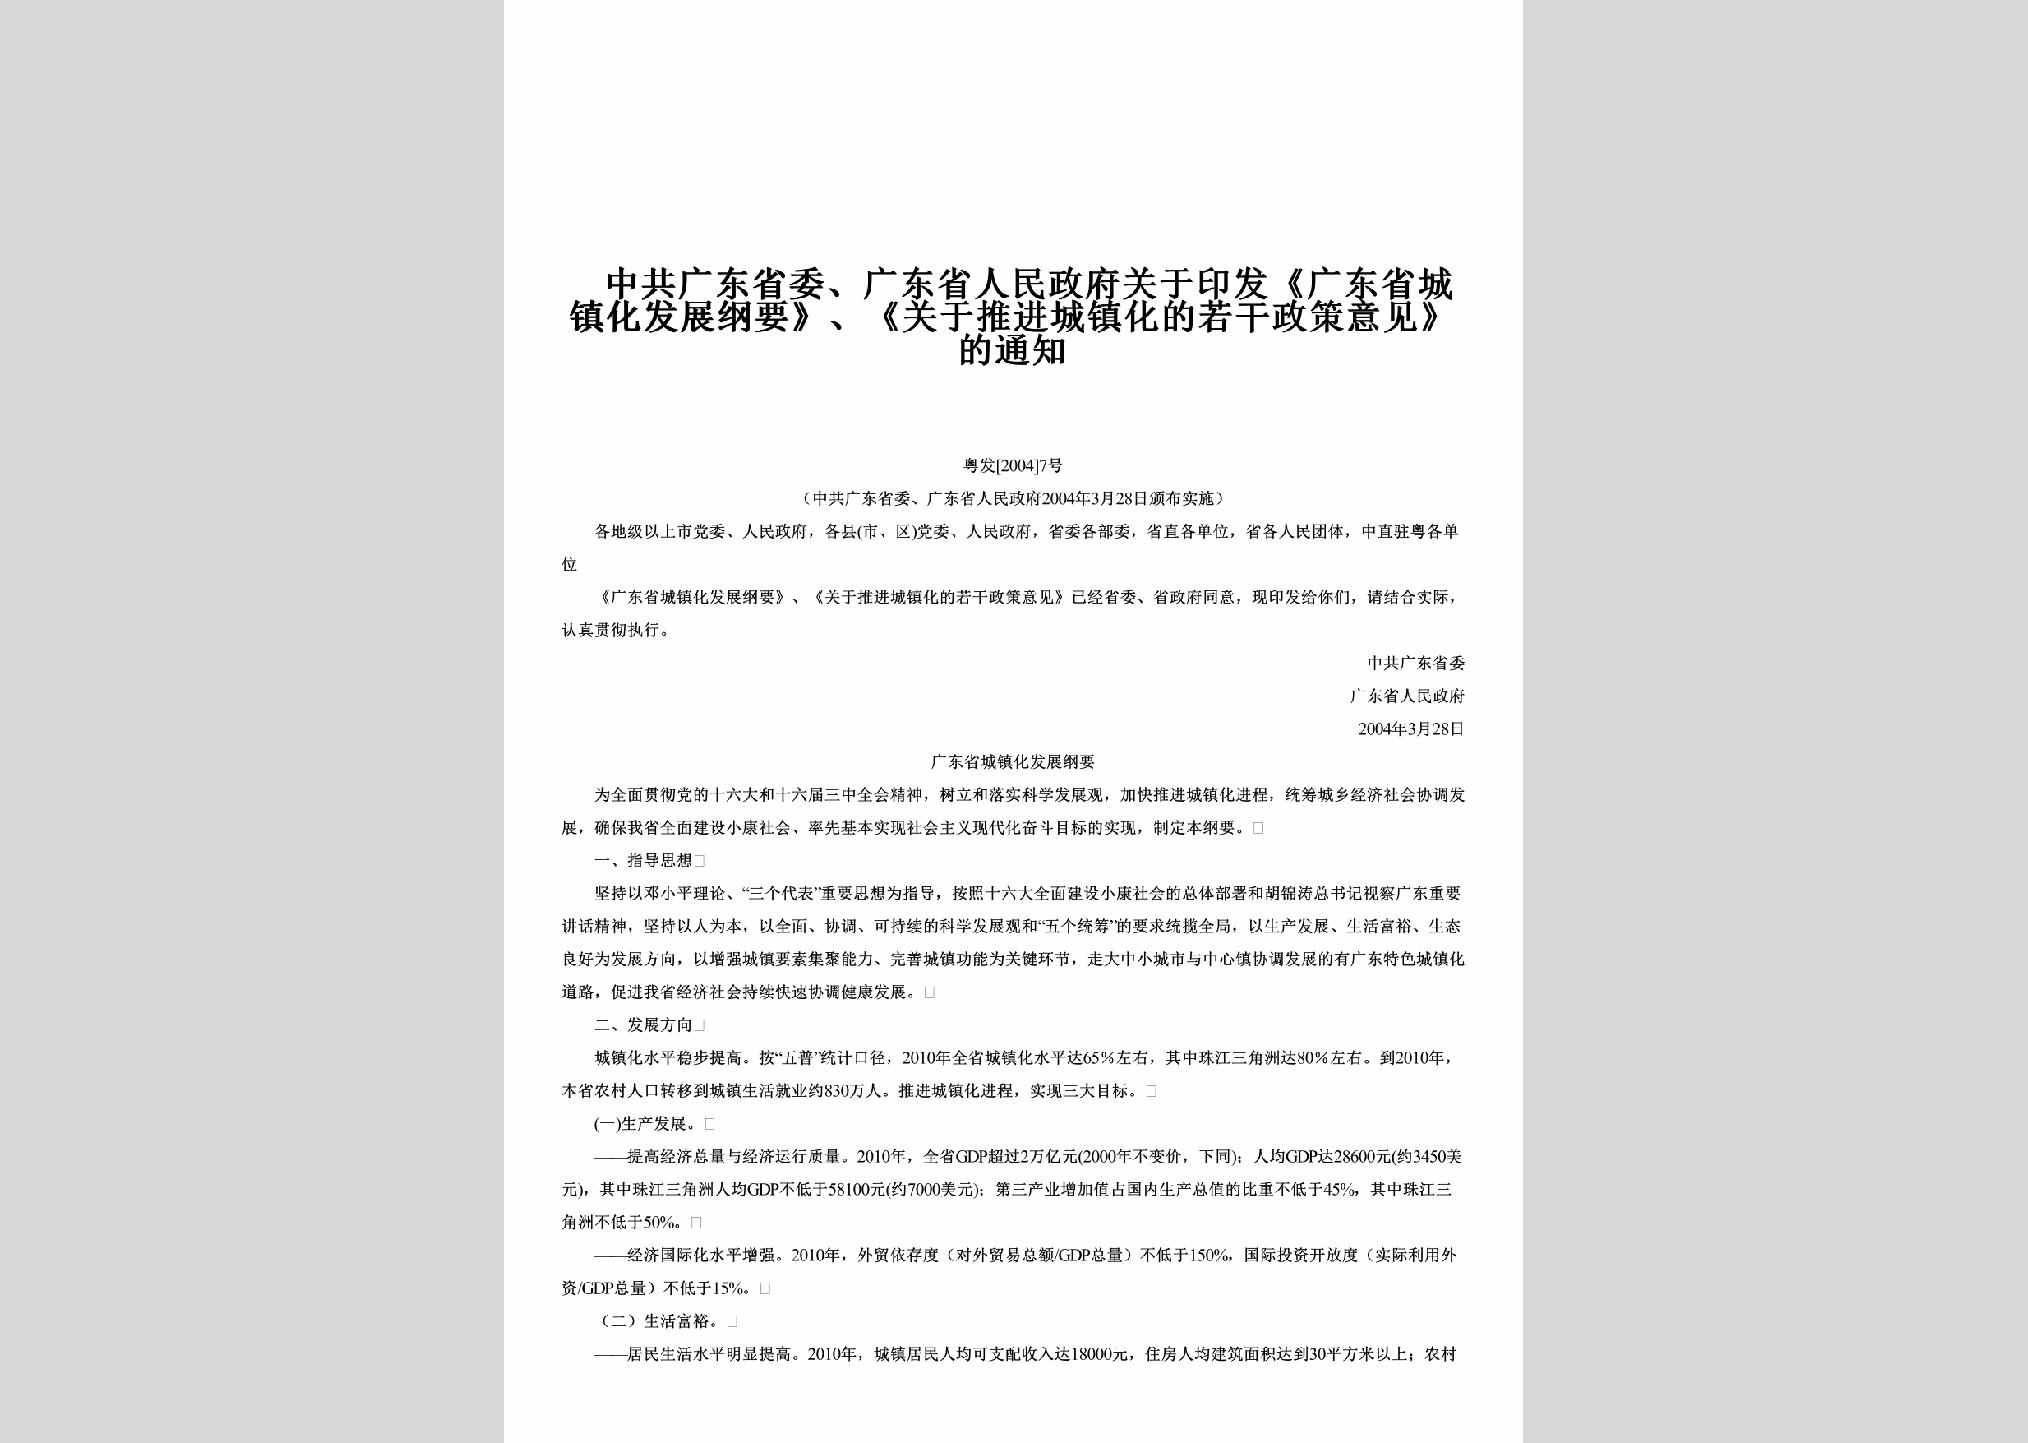 粤发[2004]7号：关于印发《广东省城镇化发展纲要》、《关于推进城镇化的若干政策意见》的通知